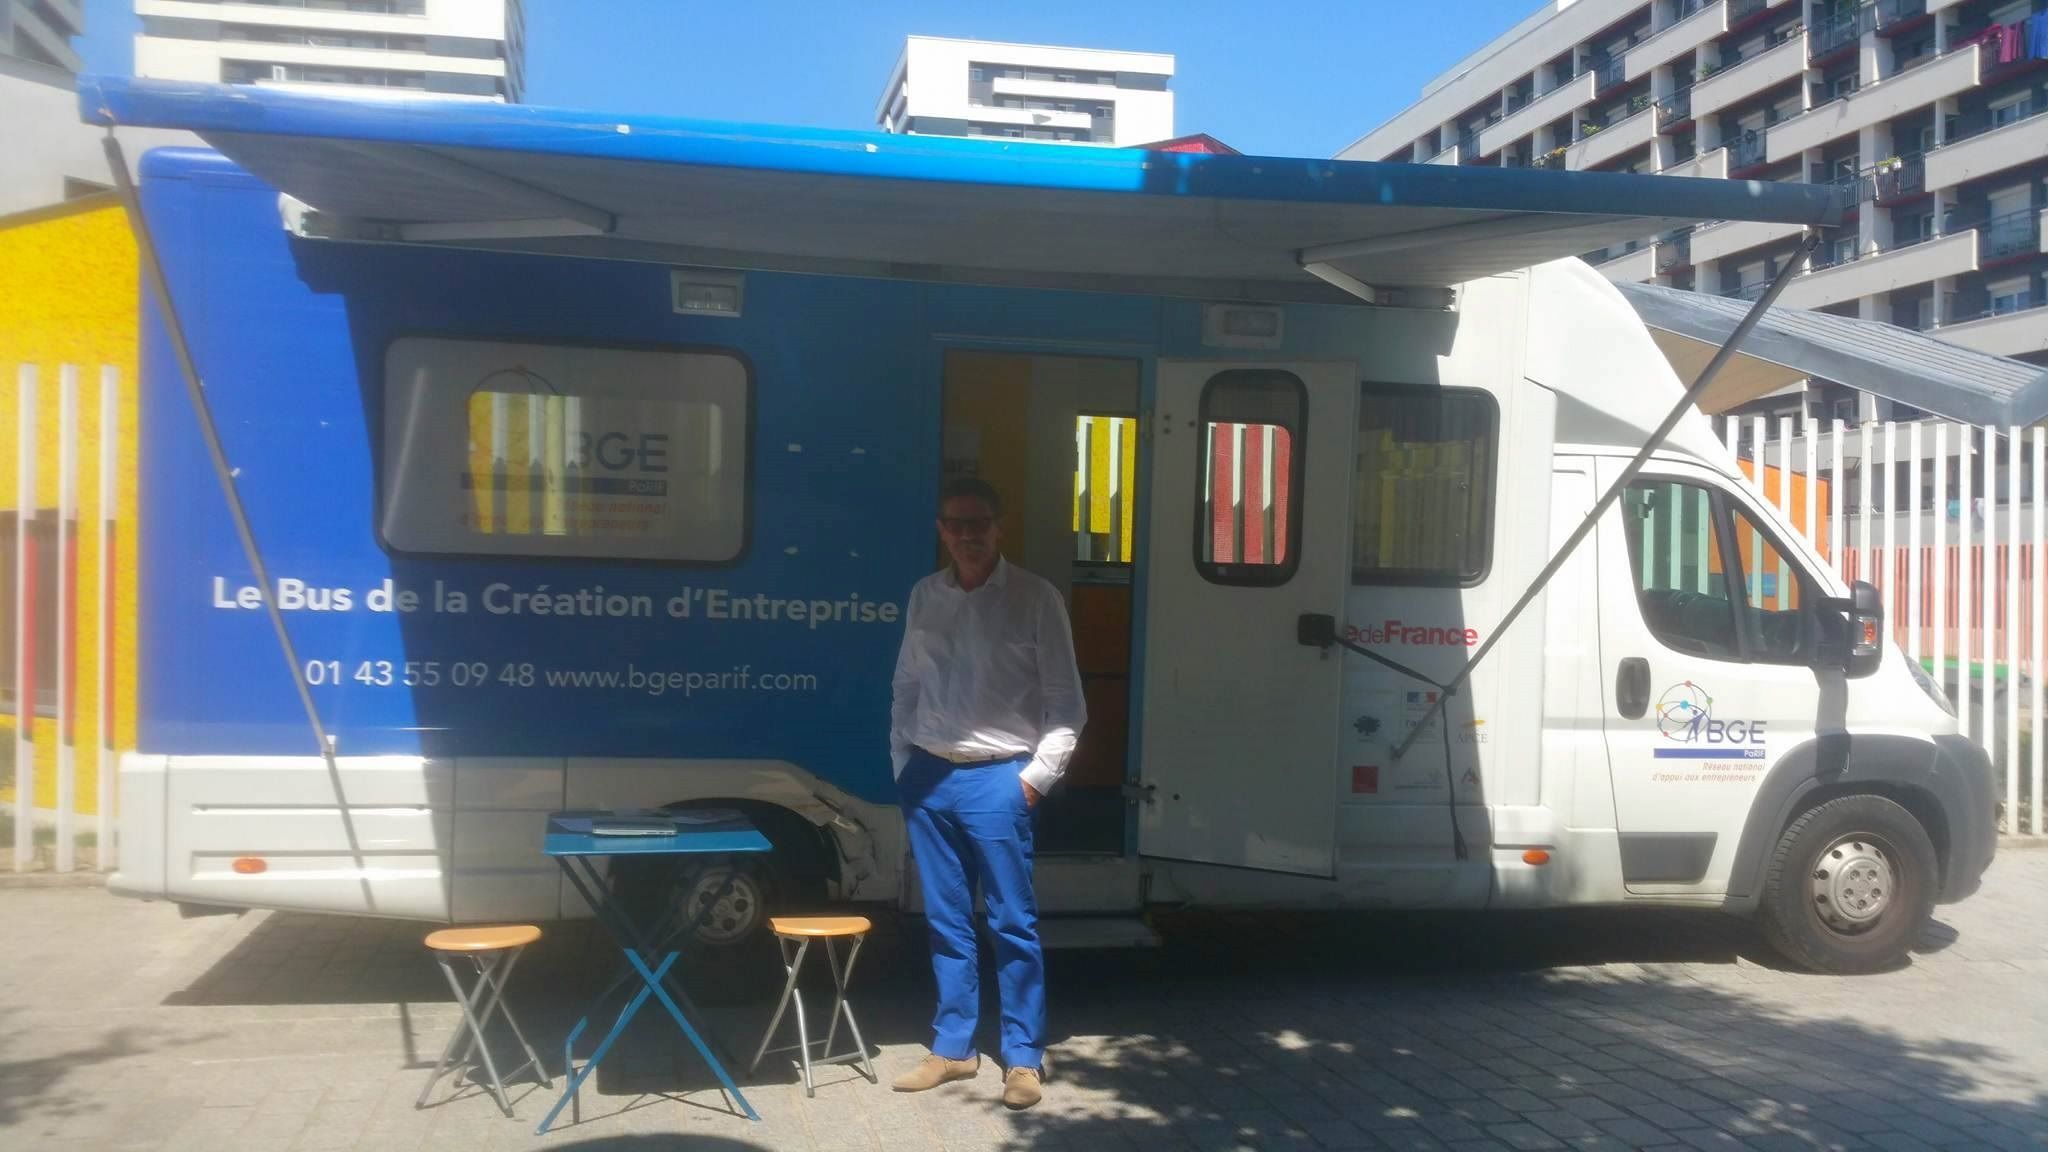 Le bus de la création d’entreprise recherche les futurs entrepreneurs dans les cités d’Île-de-France